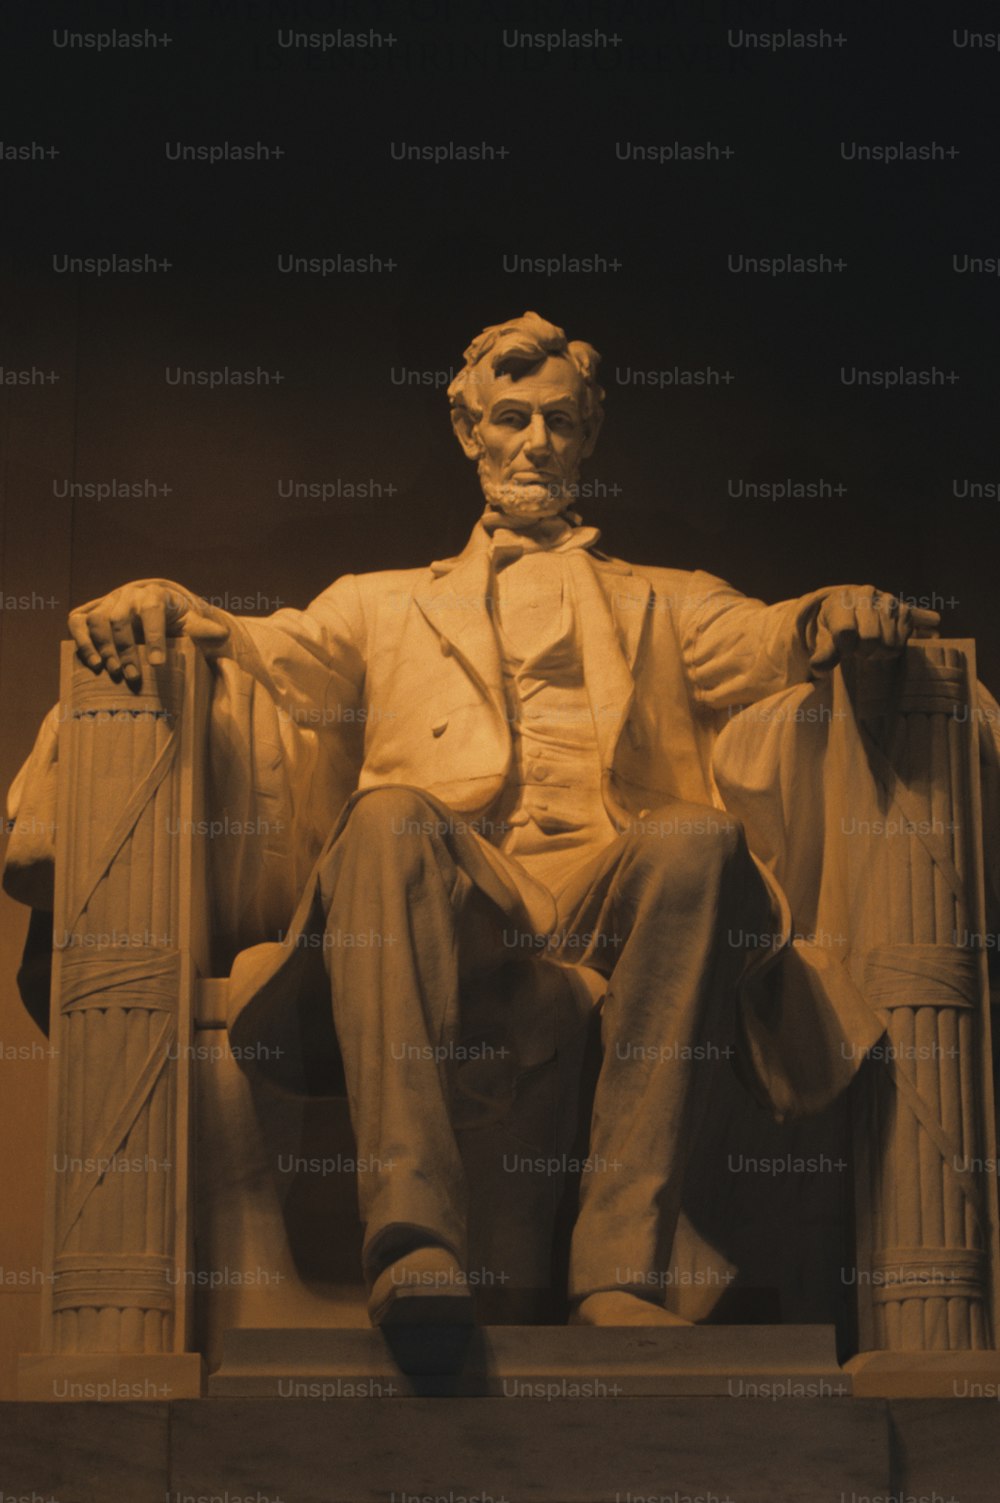 의자에 앉아 있는 에이브러햄 링컨의 동상